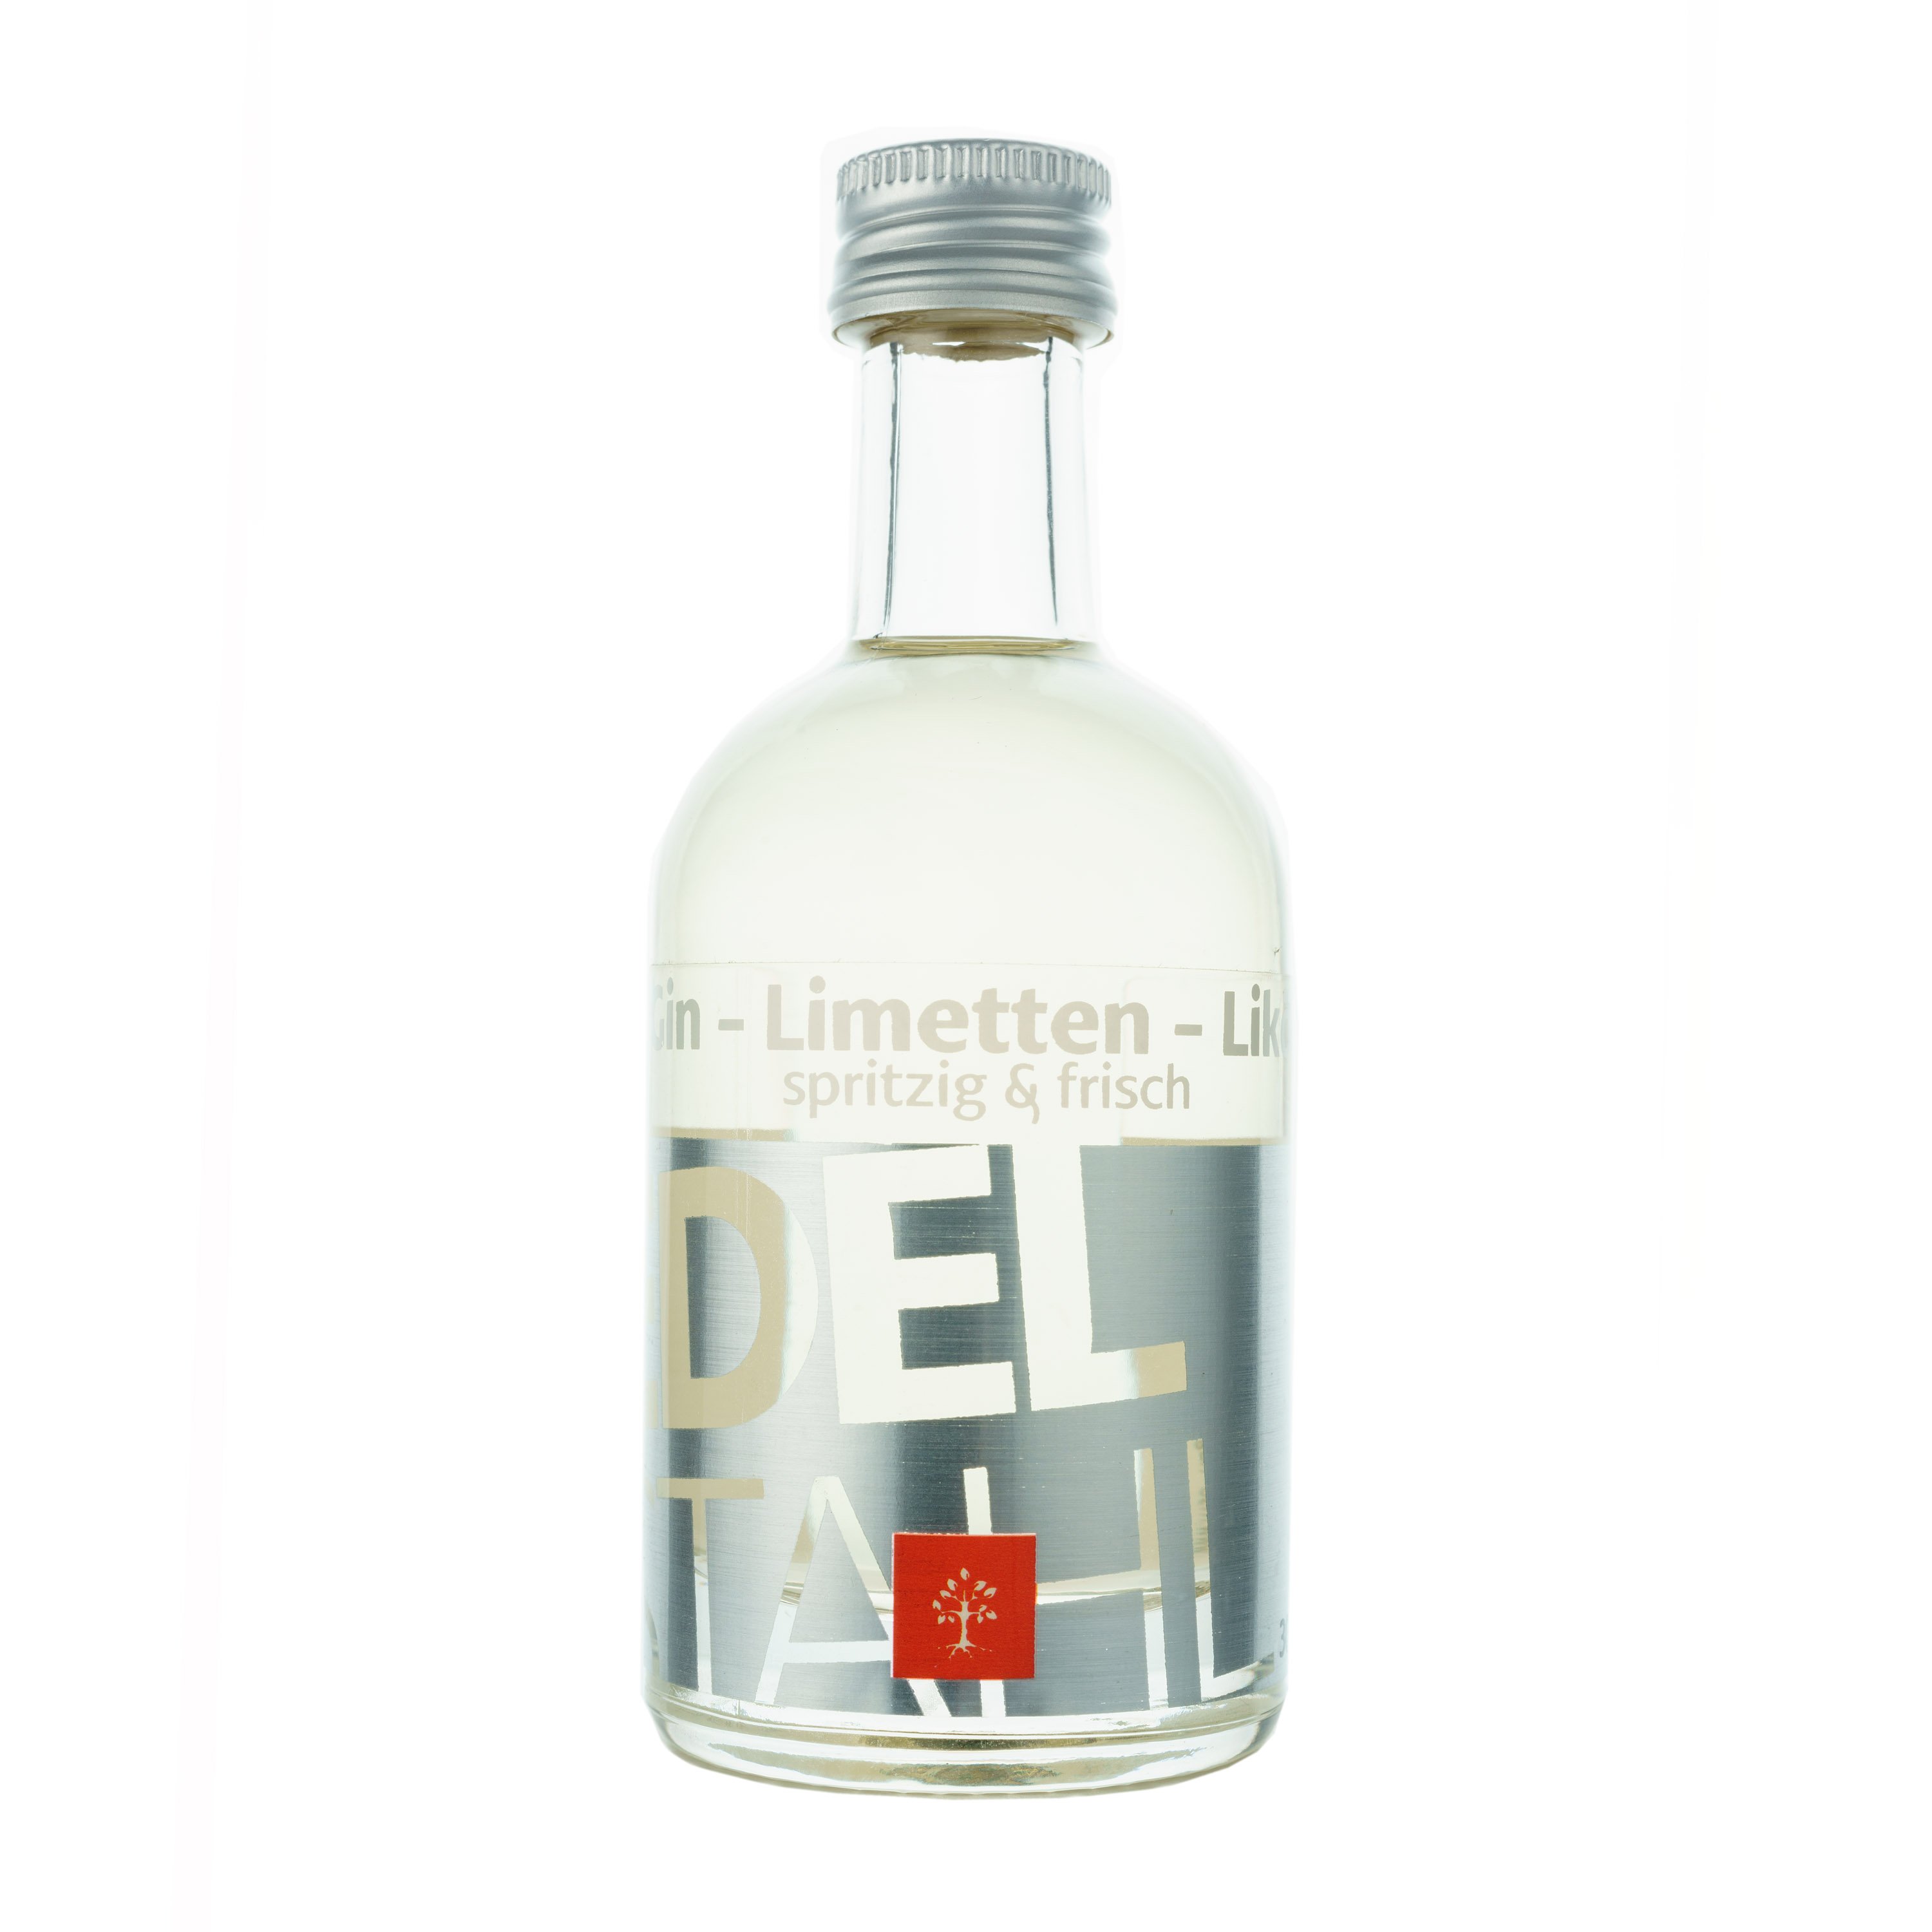 Gin-Limetten-Likör 050 ml 30% Vol.